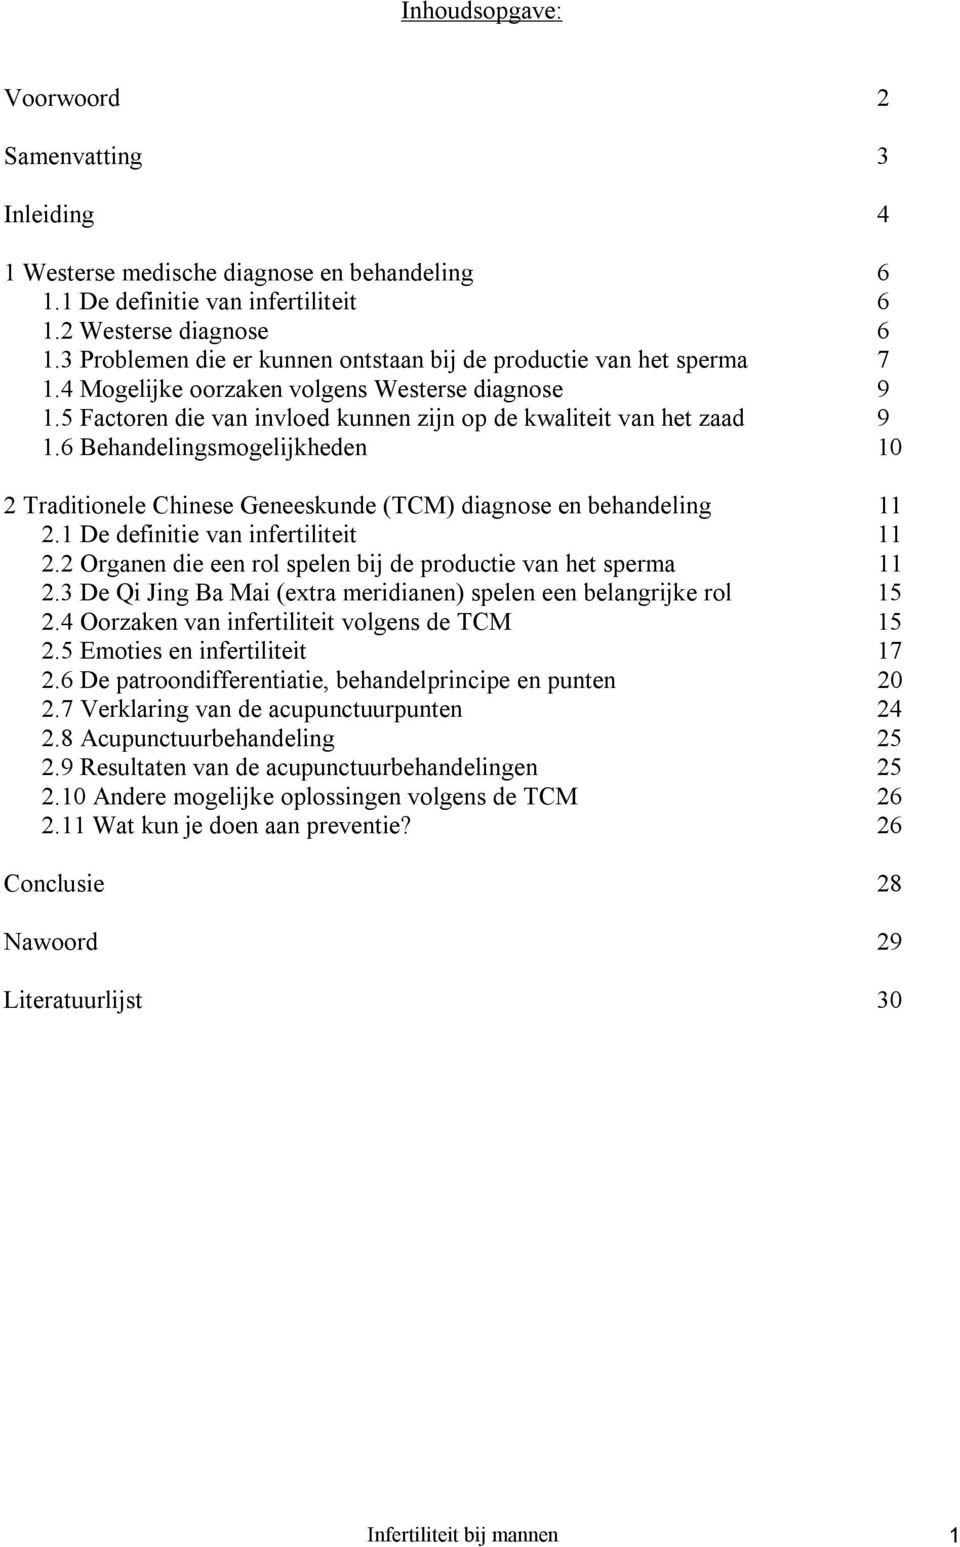 6 Behandelingsmogelijkheden 10 2 Traditionele Chinese Geneeskunde (TCM) diagnose en behandeling 11 2.1 De definitie van infertiliteit 11 2.